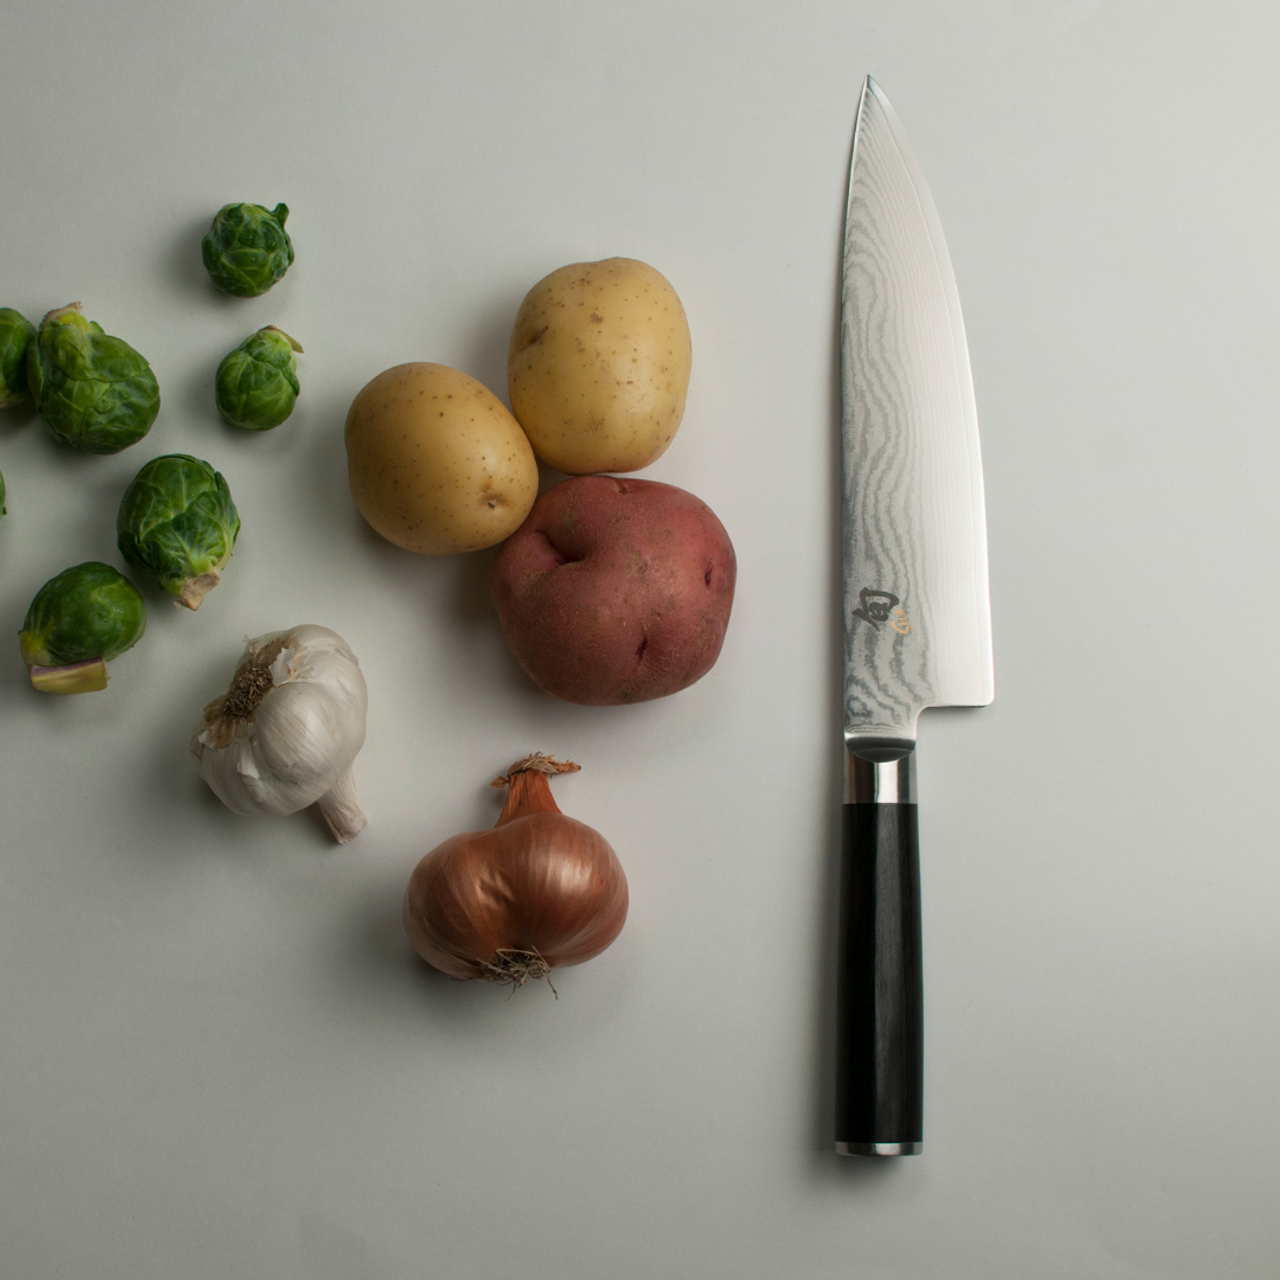 Shun Classic Chefs Knife Left Handed 20.3cm